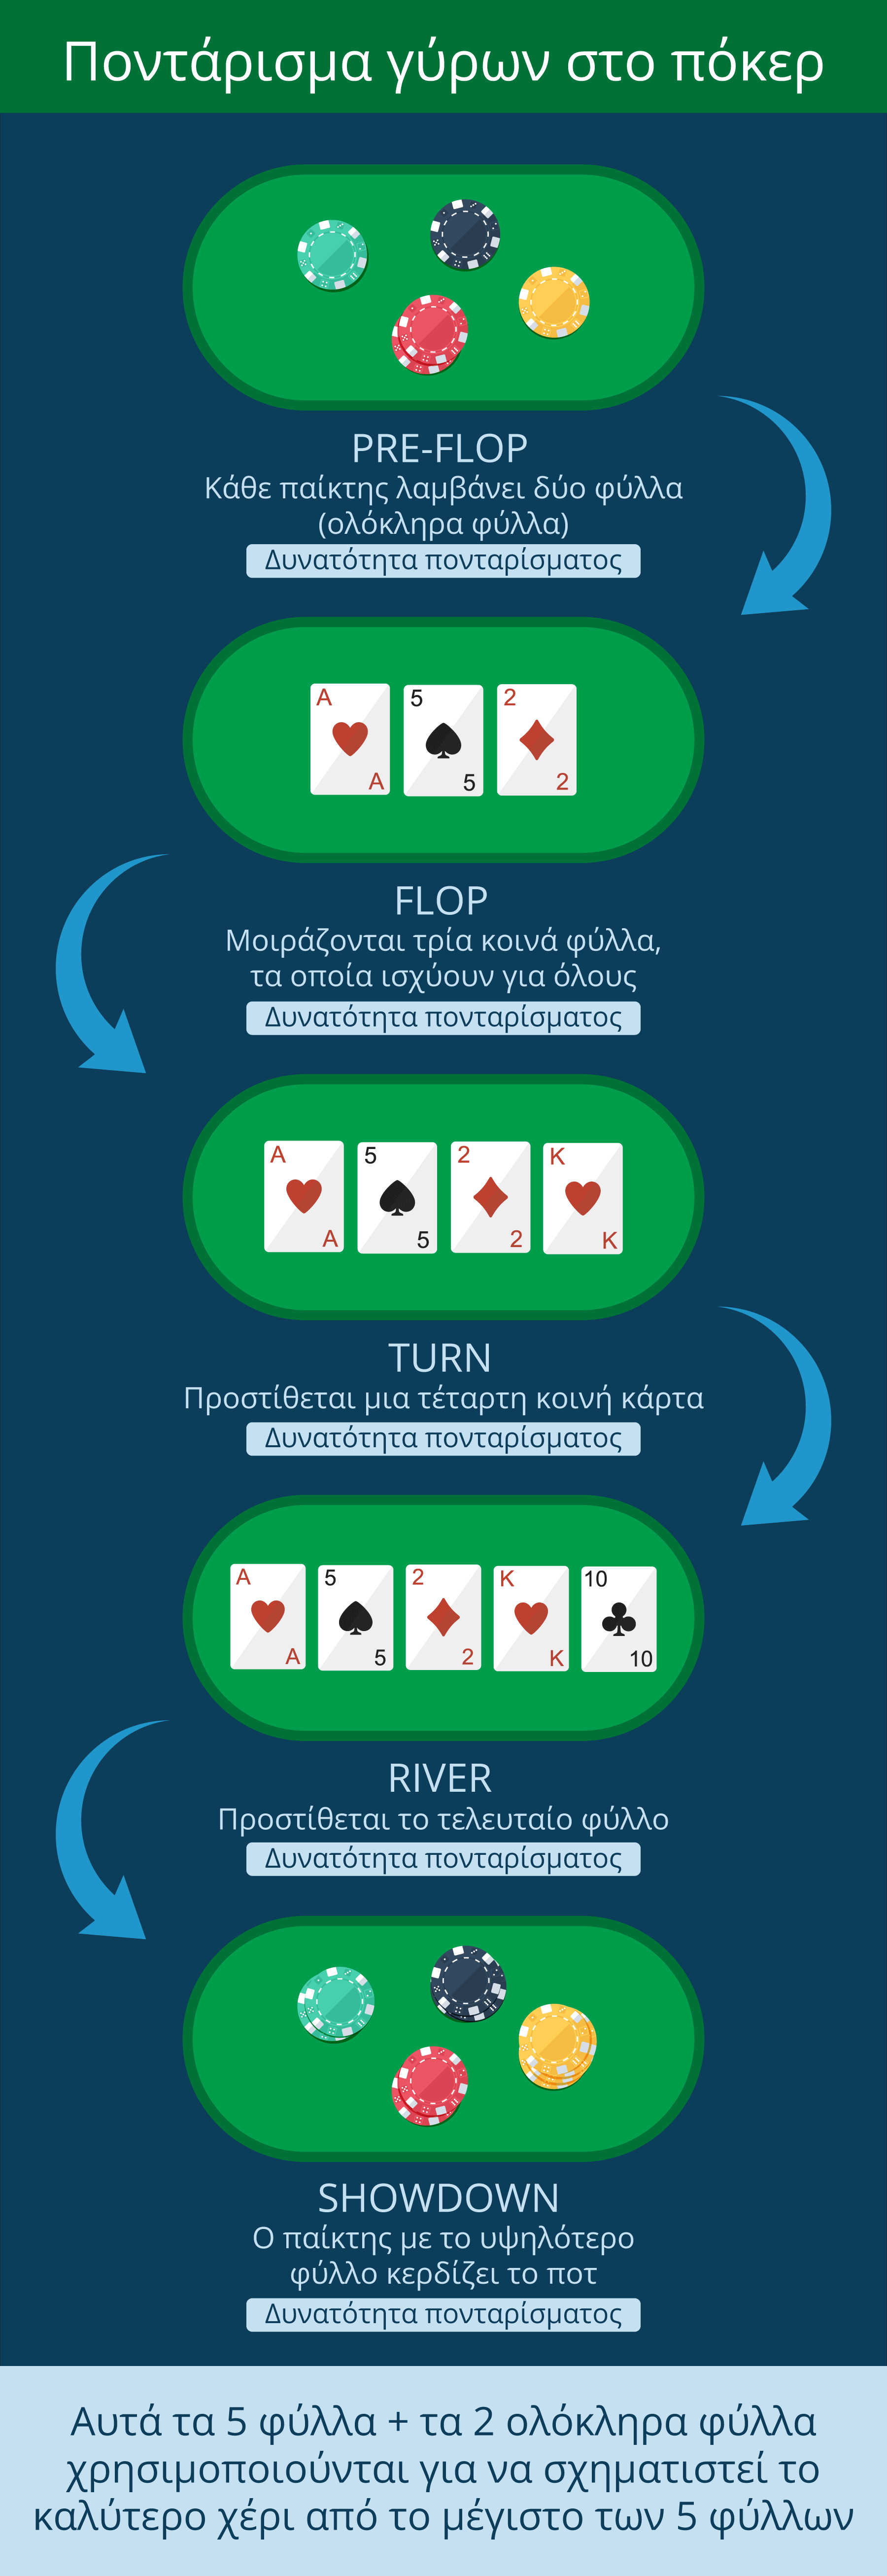 Τα πονταρίσματα και οι κανόνες πόκερ